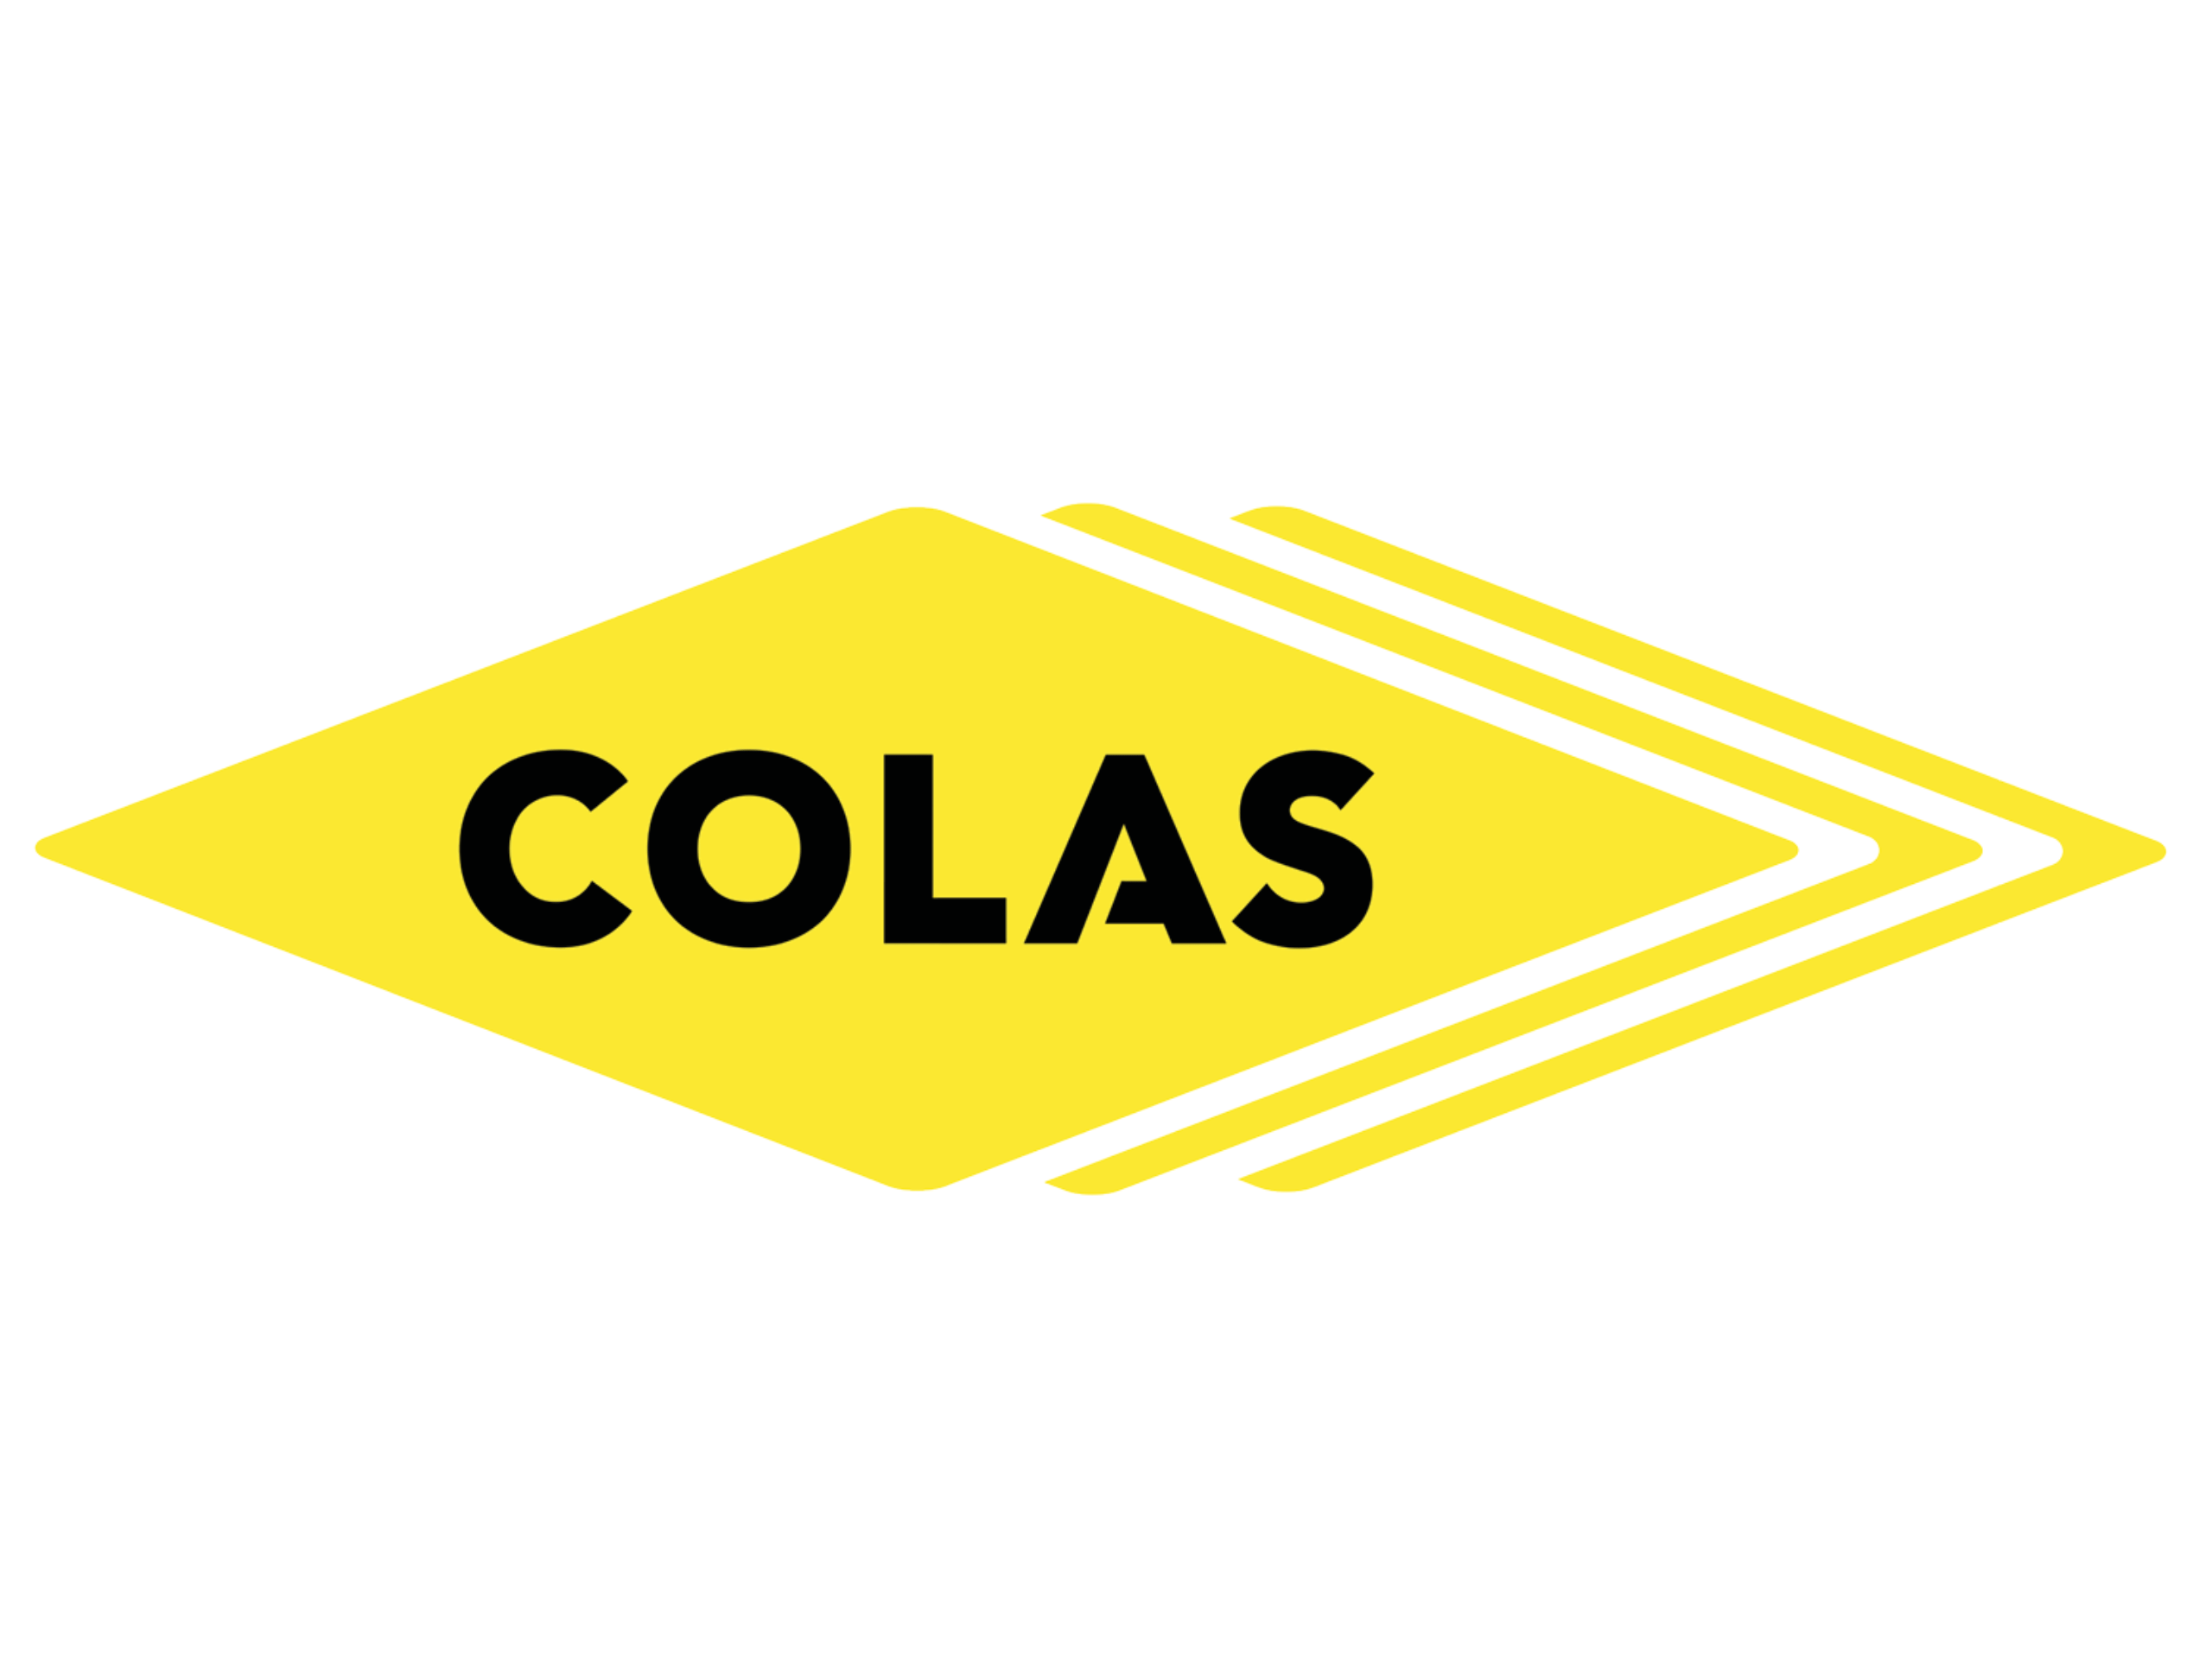 COLAS